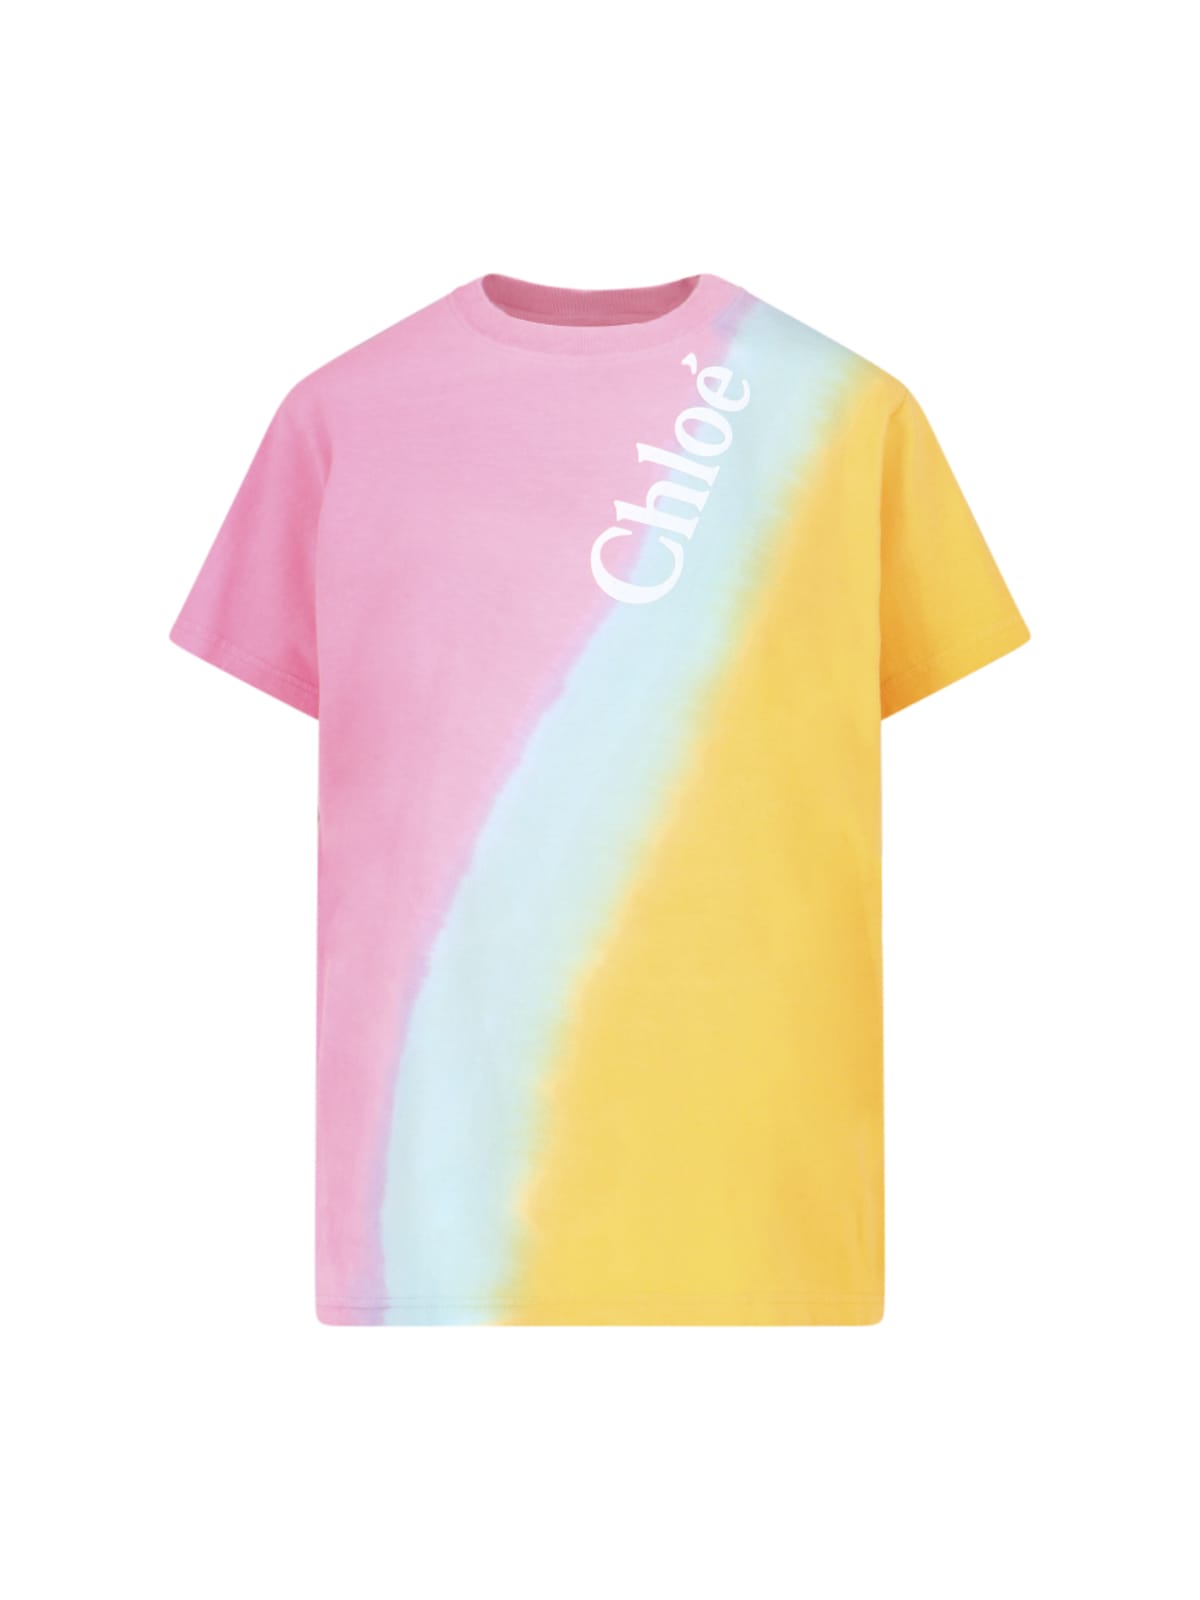 Chloé Tie-dye Effect T-shirt In Multicolor